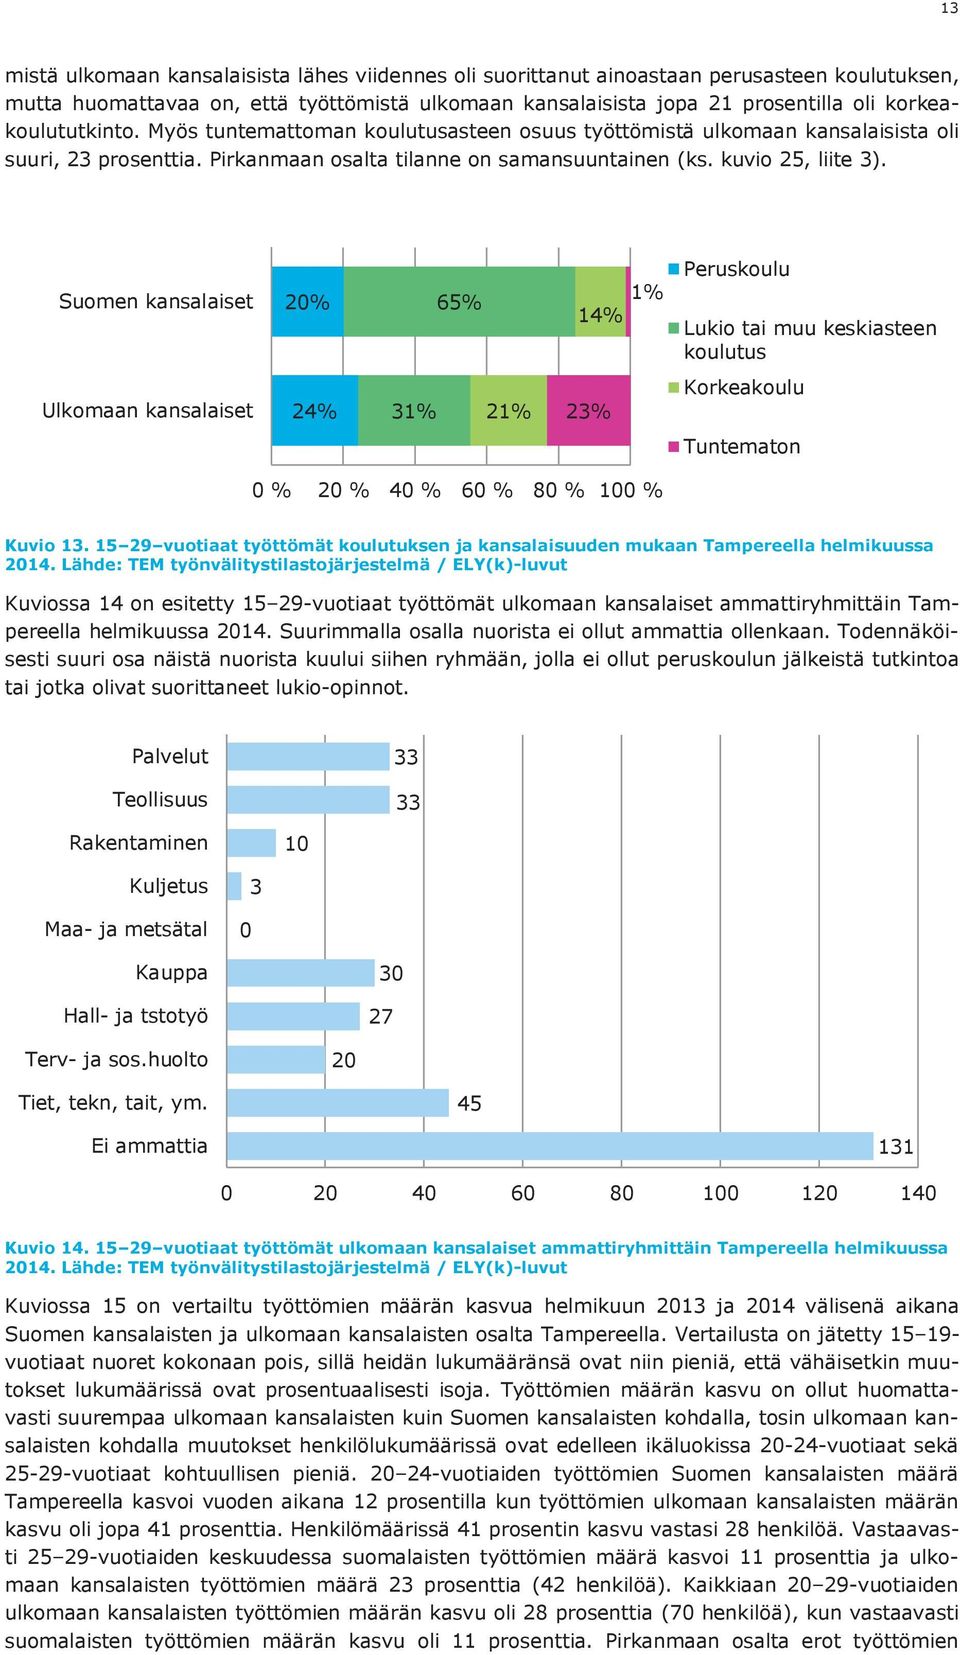 Suomen kansalaiset 20% 65% 1% 14% Peruskoulu Lukio tai muu keskiasteen koulutus Ulkomaan kansalaiset 24% 31% 21% 23% Korkeakoulu Tuntematon 0 % 20 % 40 % 60 % 80 % 100 % Kuvio 13.